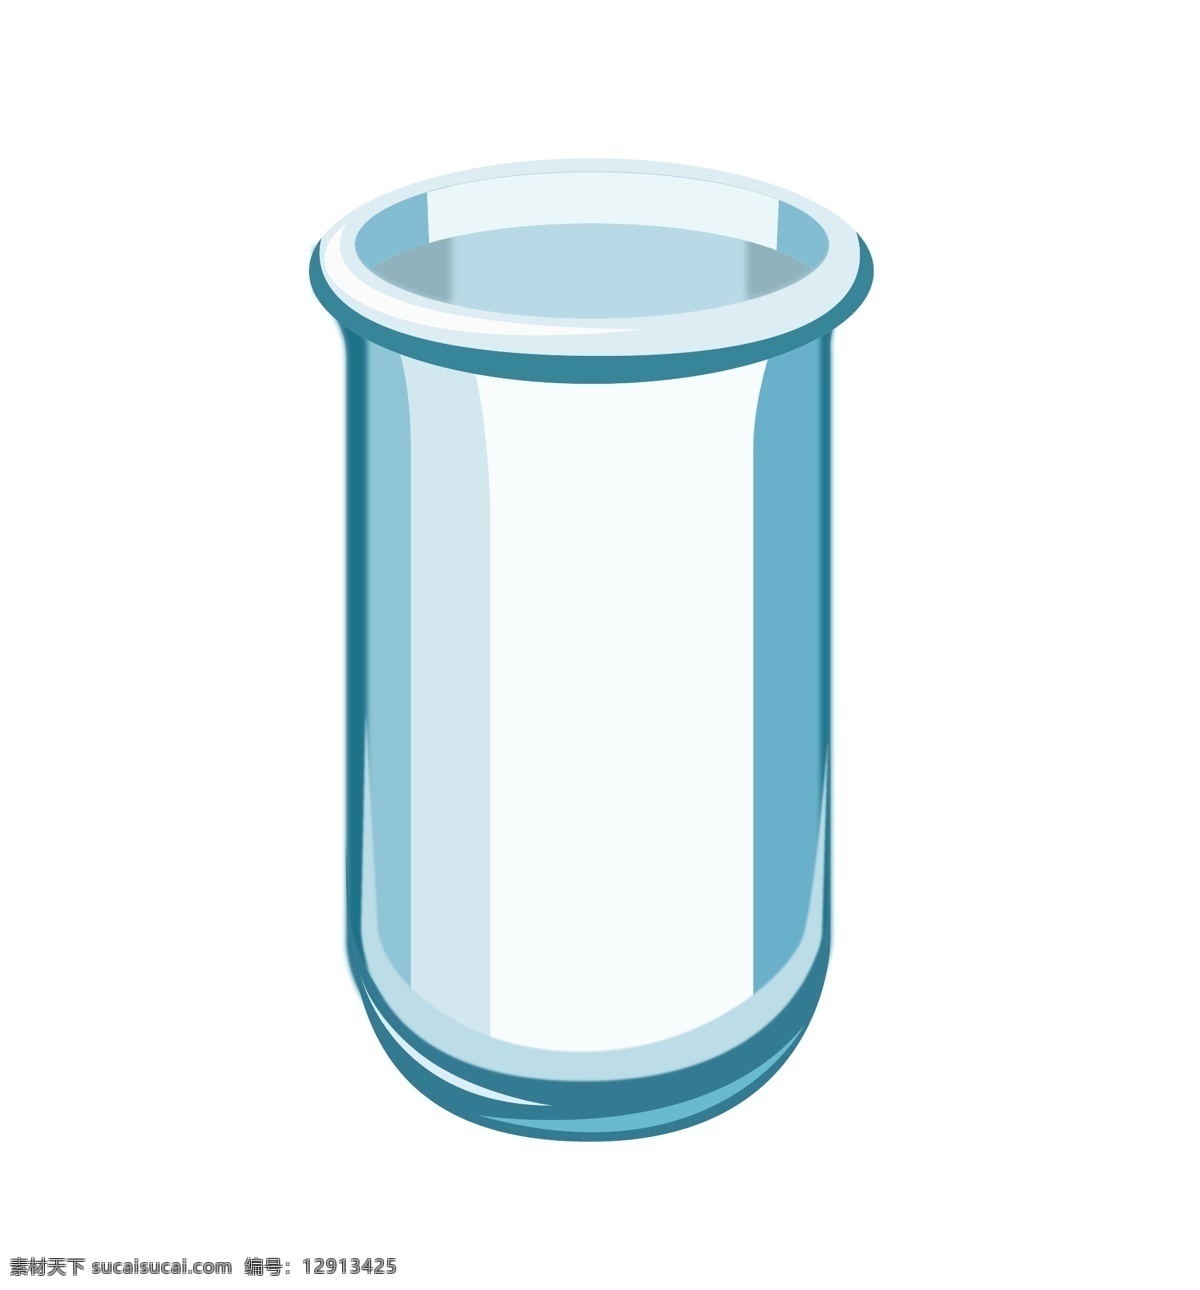 蓝色 烧杯 卡通 插画 烧杯插画 卡通烧杯插画 蓝色的烧杯 实验用品 化学用品插画 精美的烧杯